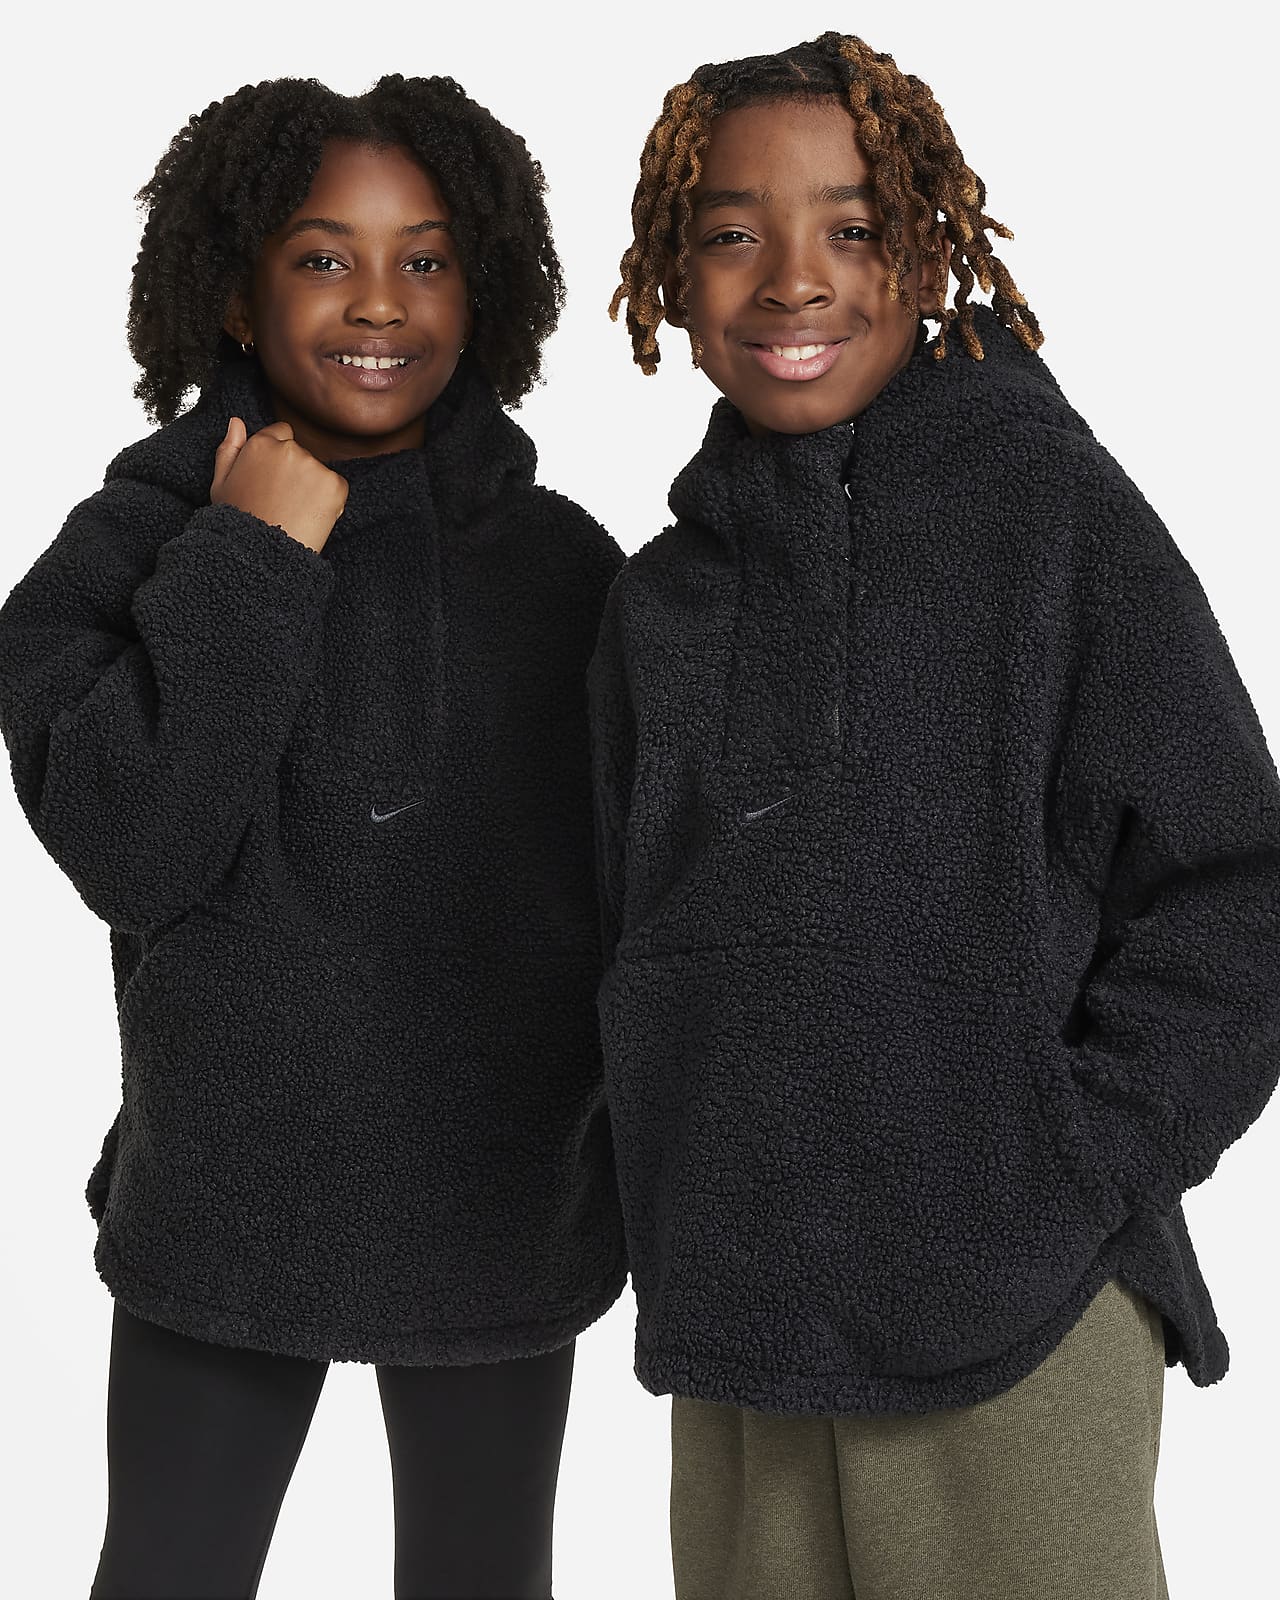 Toddler Boys Girls Fleece Hooded Jackets Zipper Coat Winter Warm Bear Ear  Cute Jacket Unisex Kids Outerwear | Fruugo BH